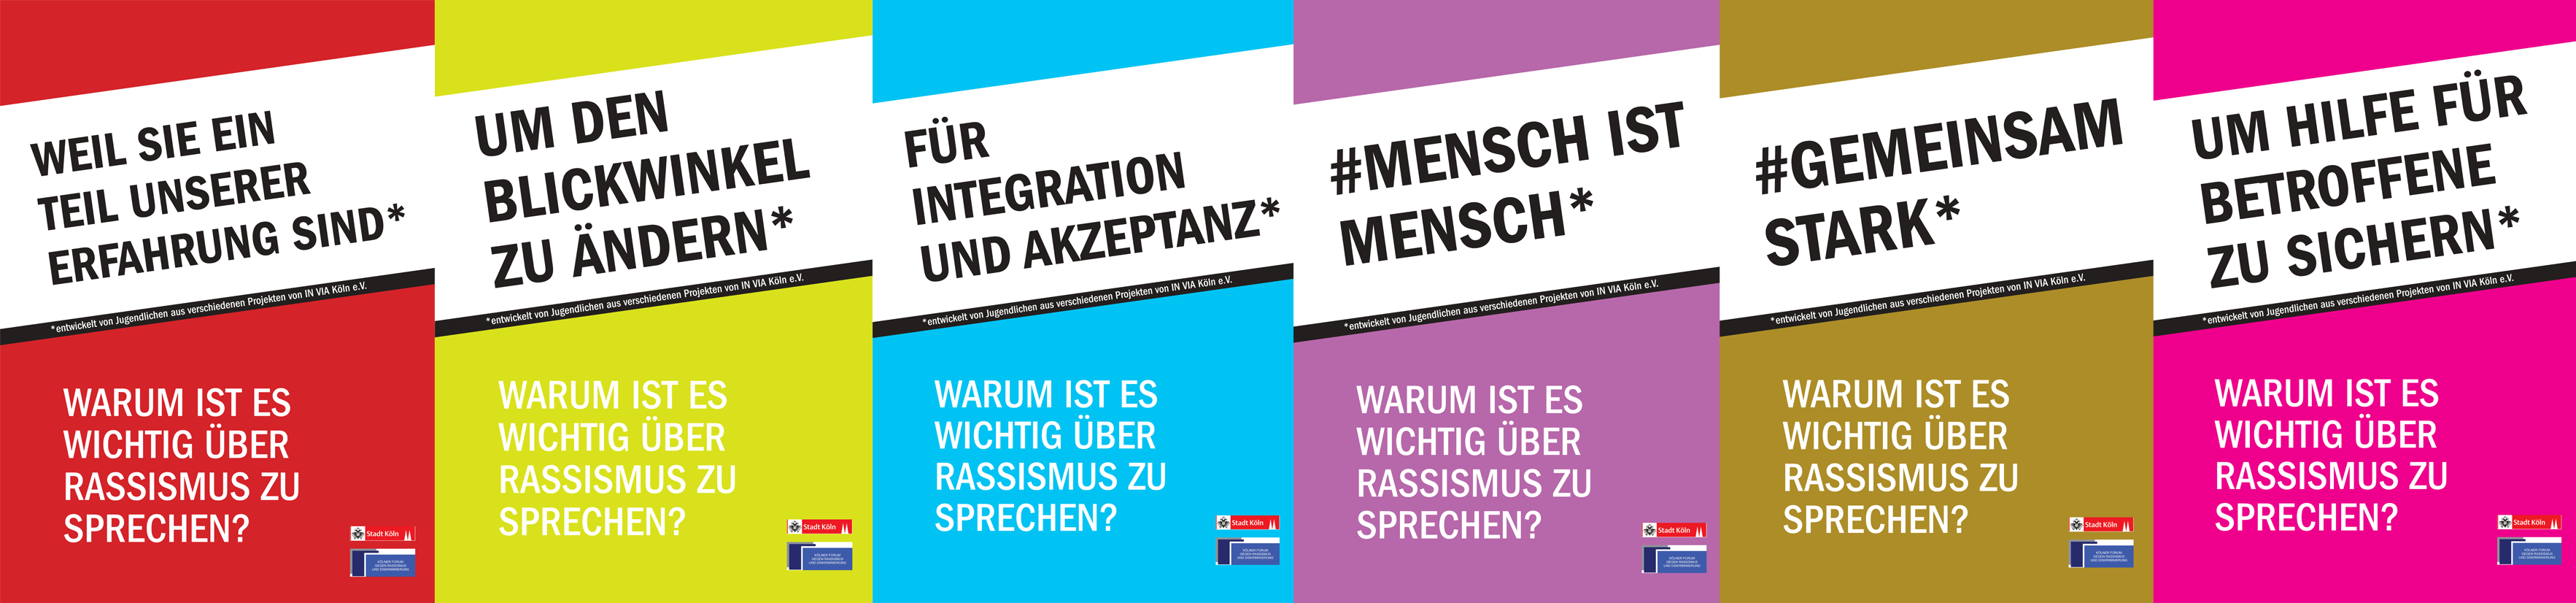 Banner (c) Aktion „Stark und aktiv gegen Alltagsrassismus in Köln“ von IN VIA e.V. in Kooperation mit dem Kölner Forum